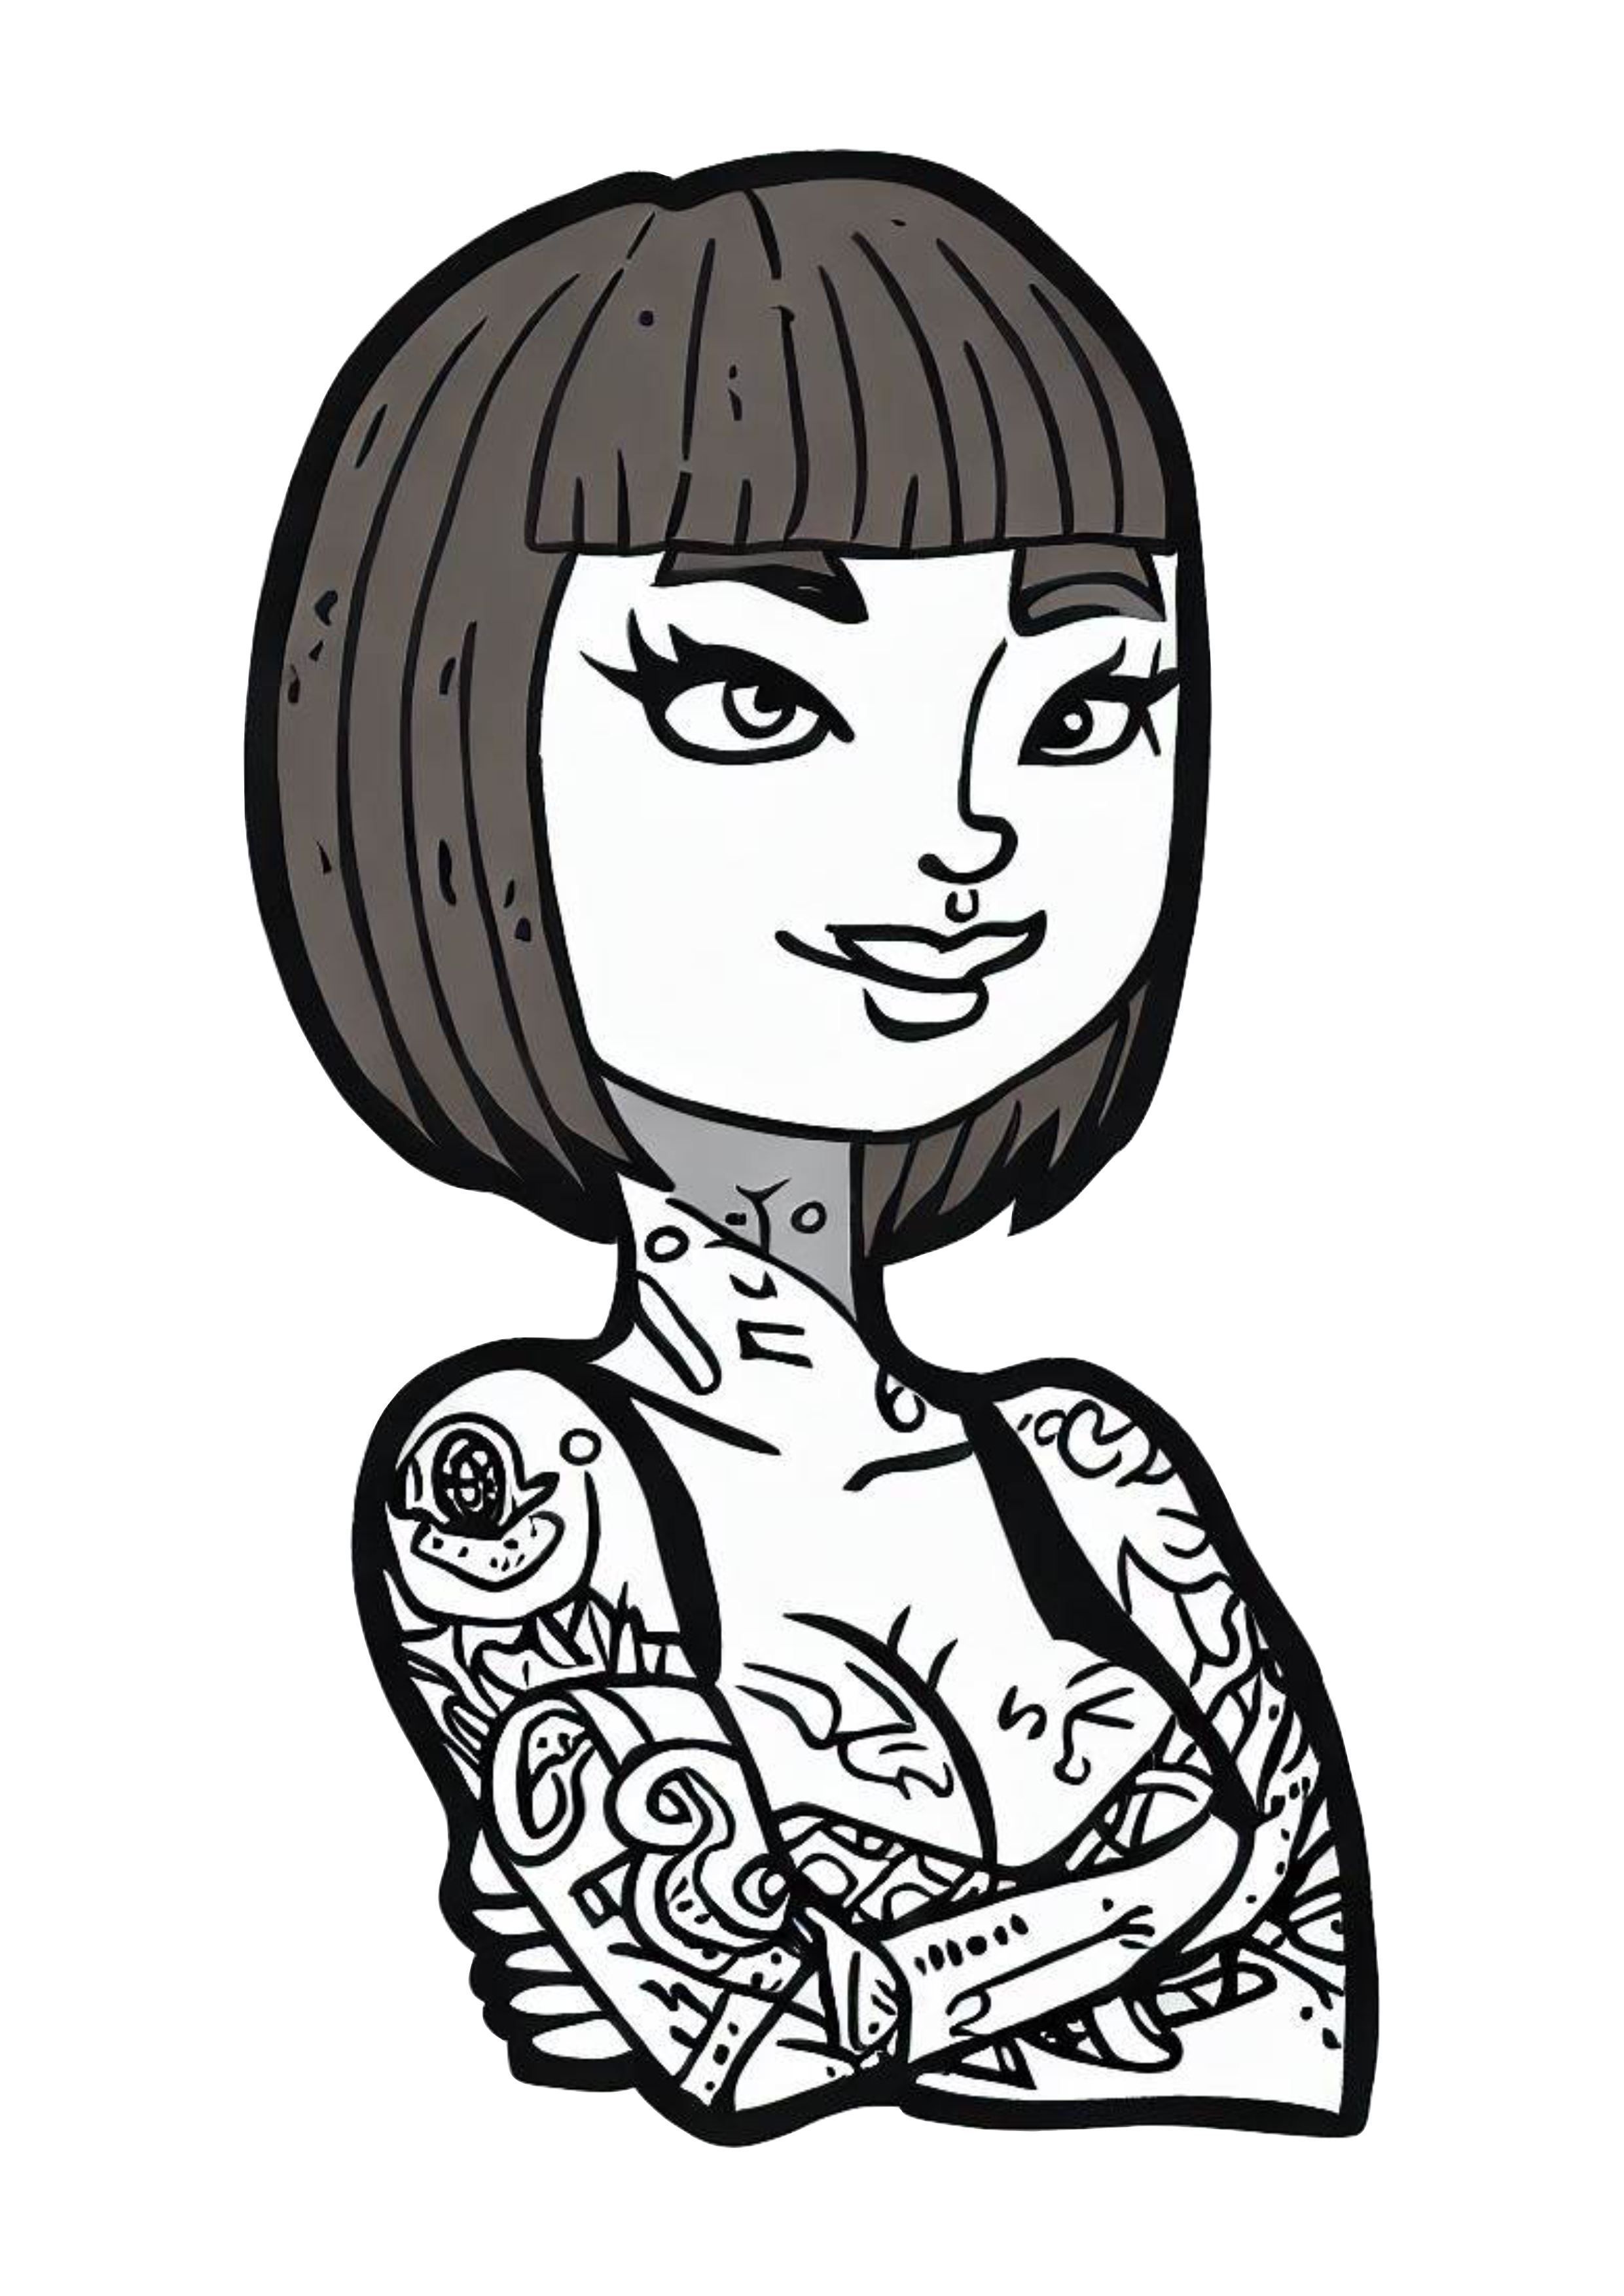 Mulher empoderada cabelo curto tatuada feminista desenho simples preto e branco ilustração tatuagem png